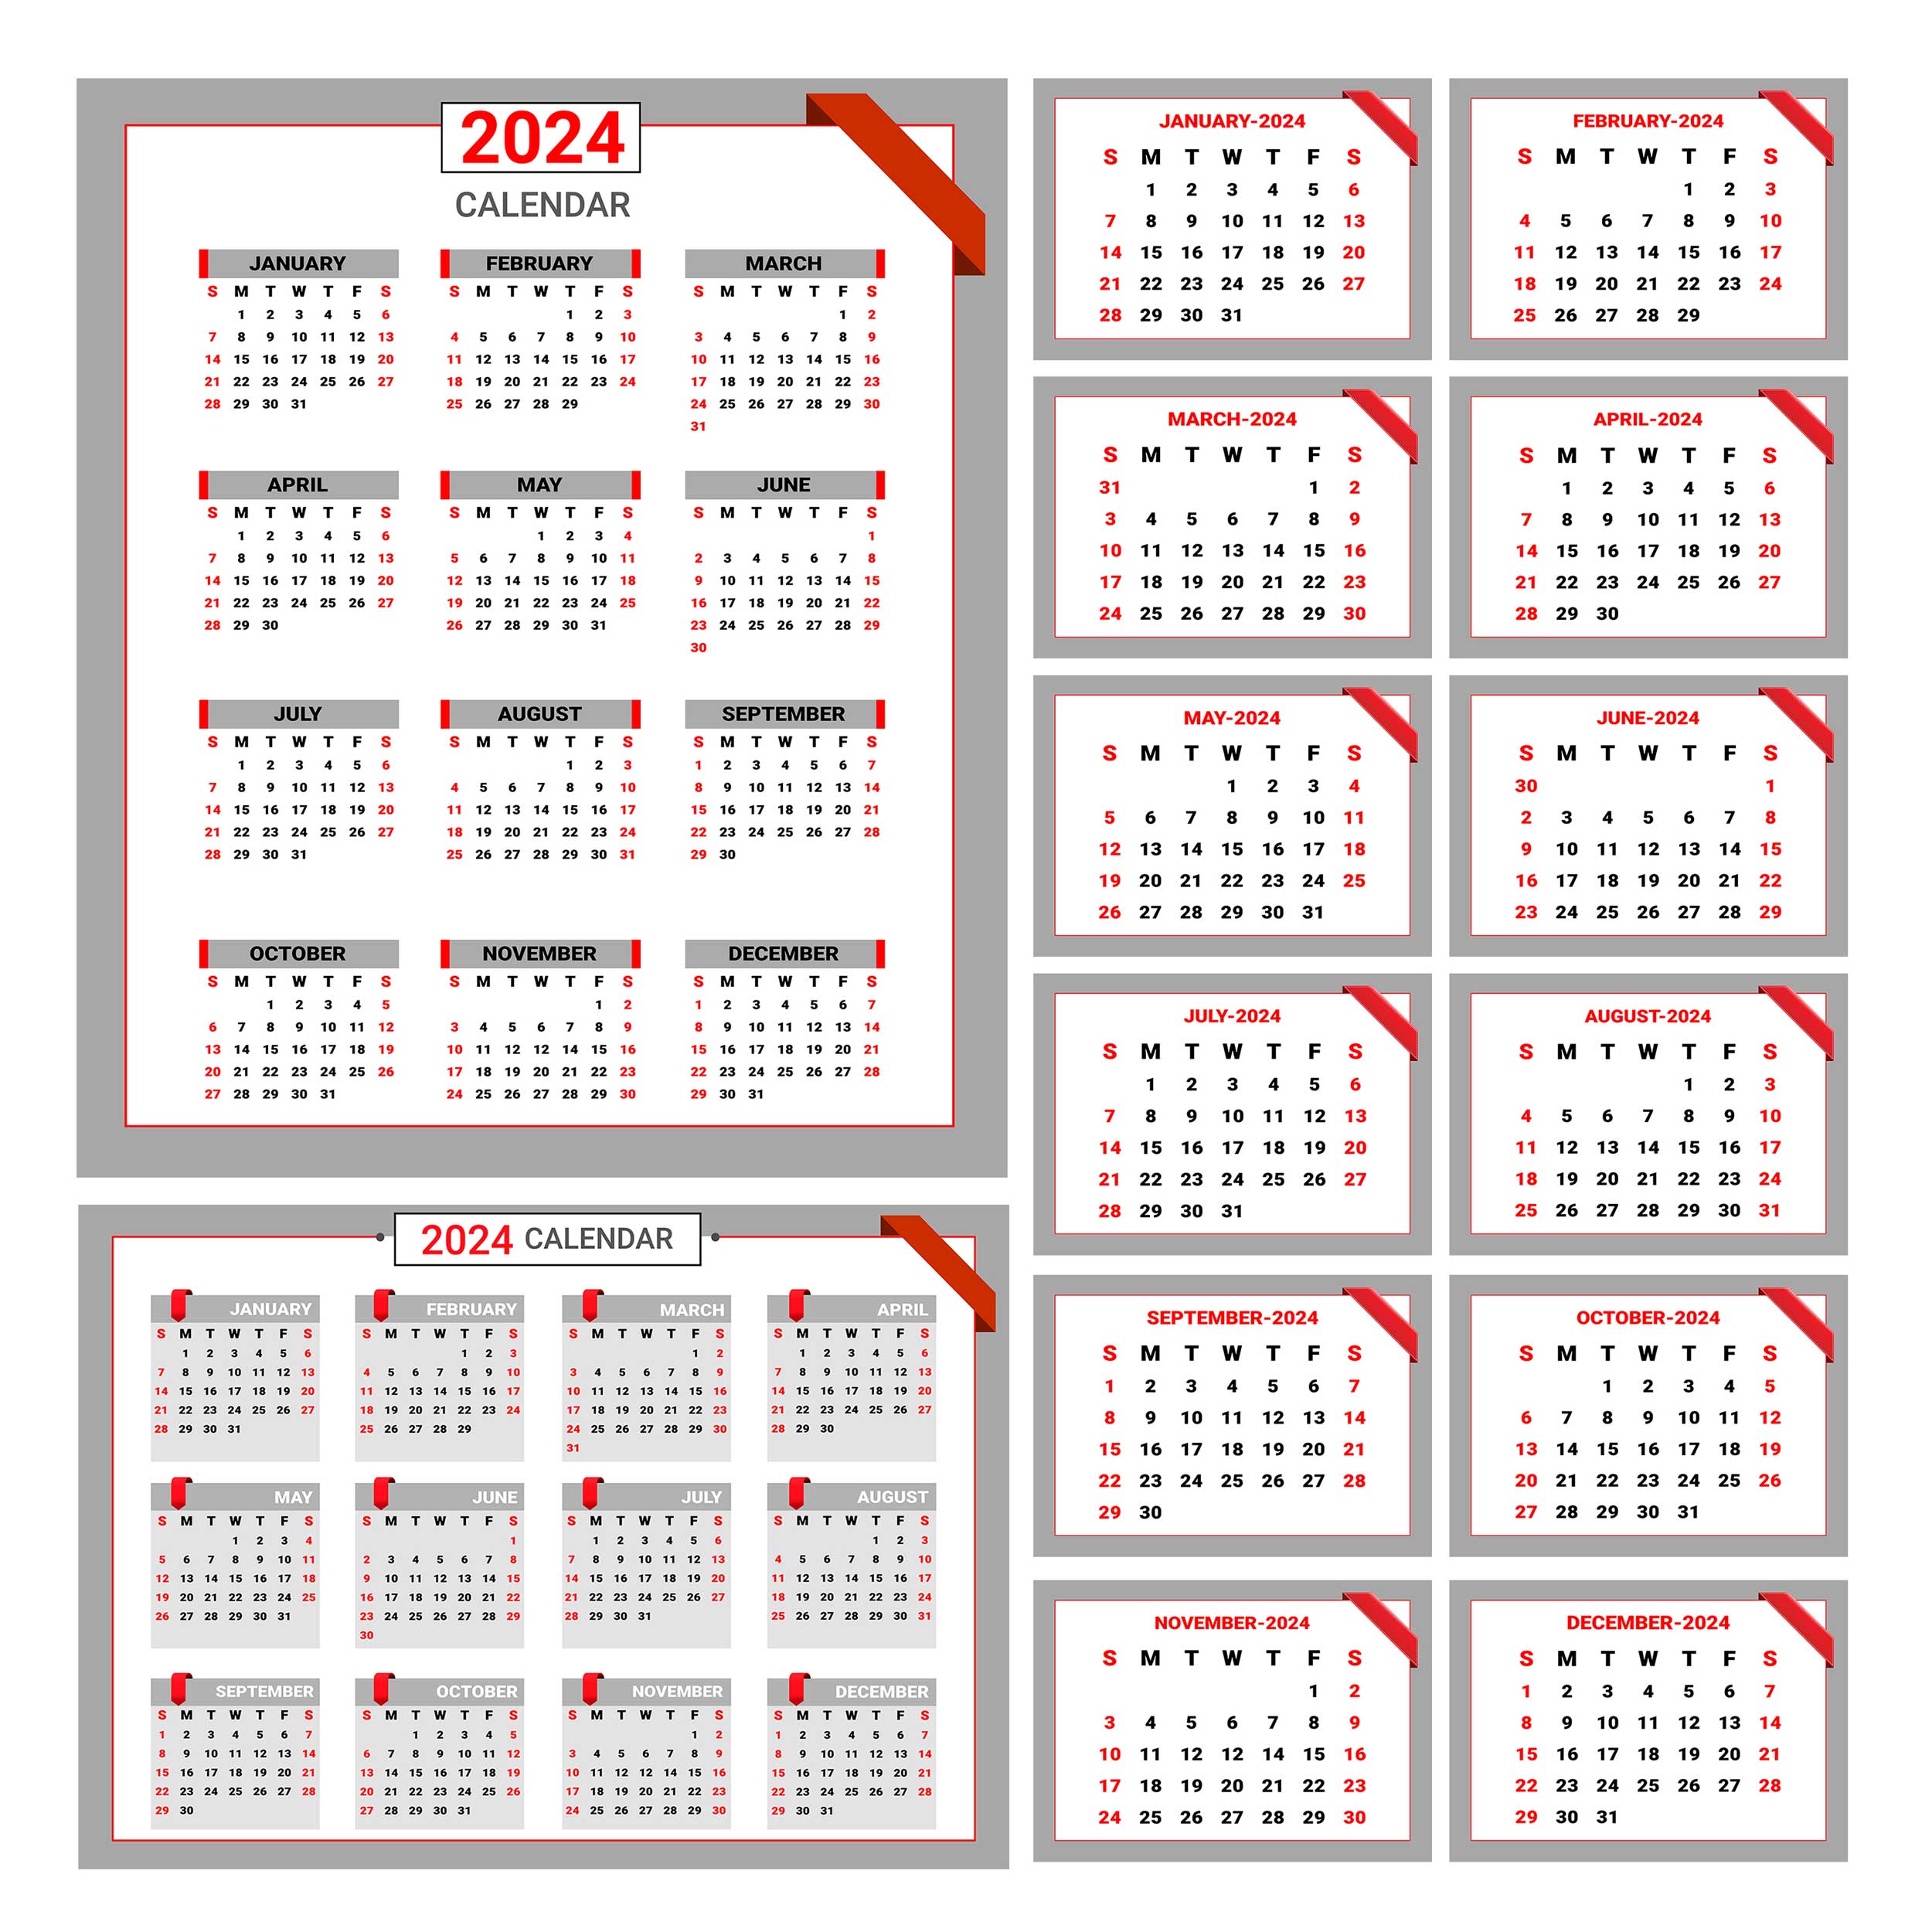 Calendar-2024 cover image.